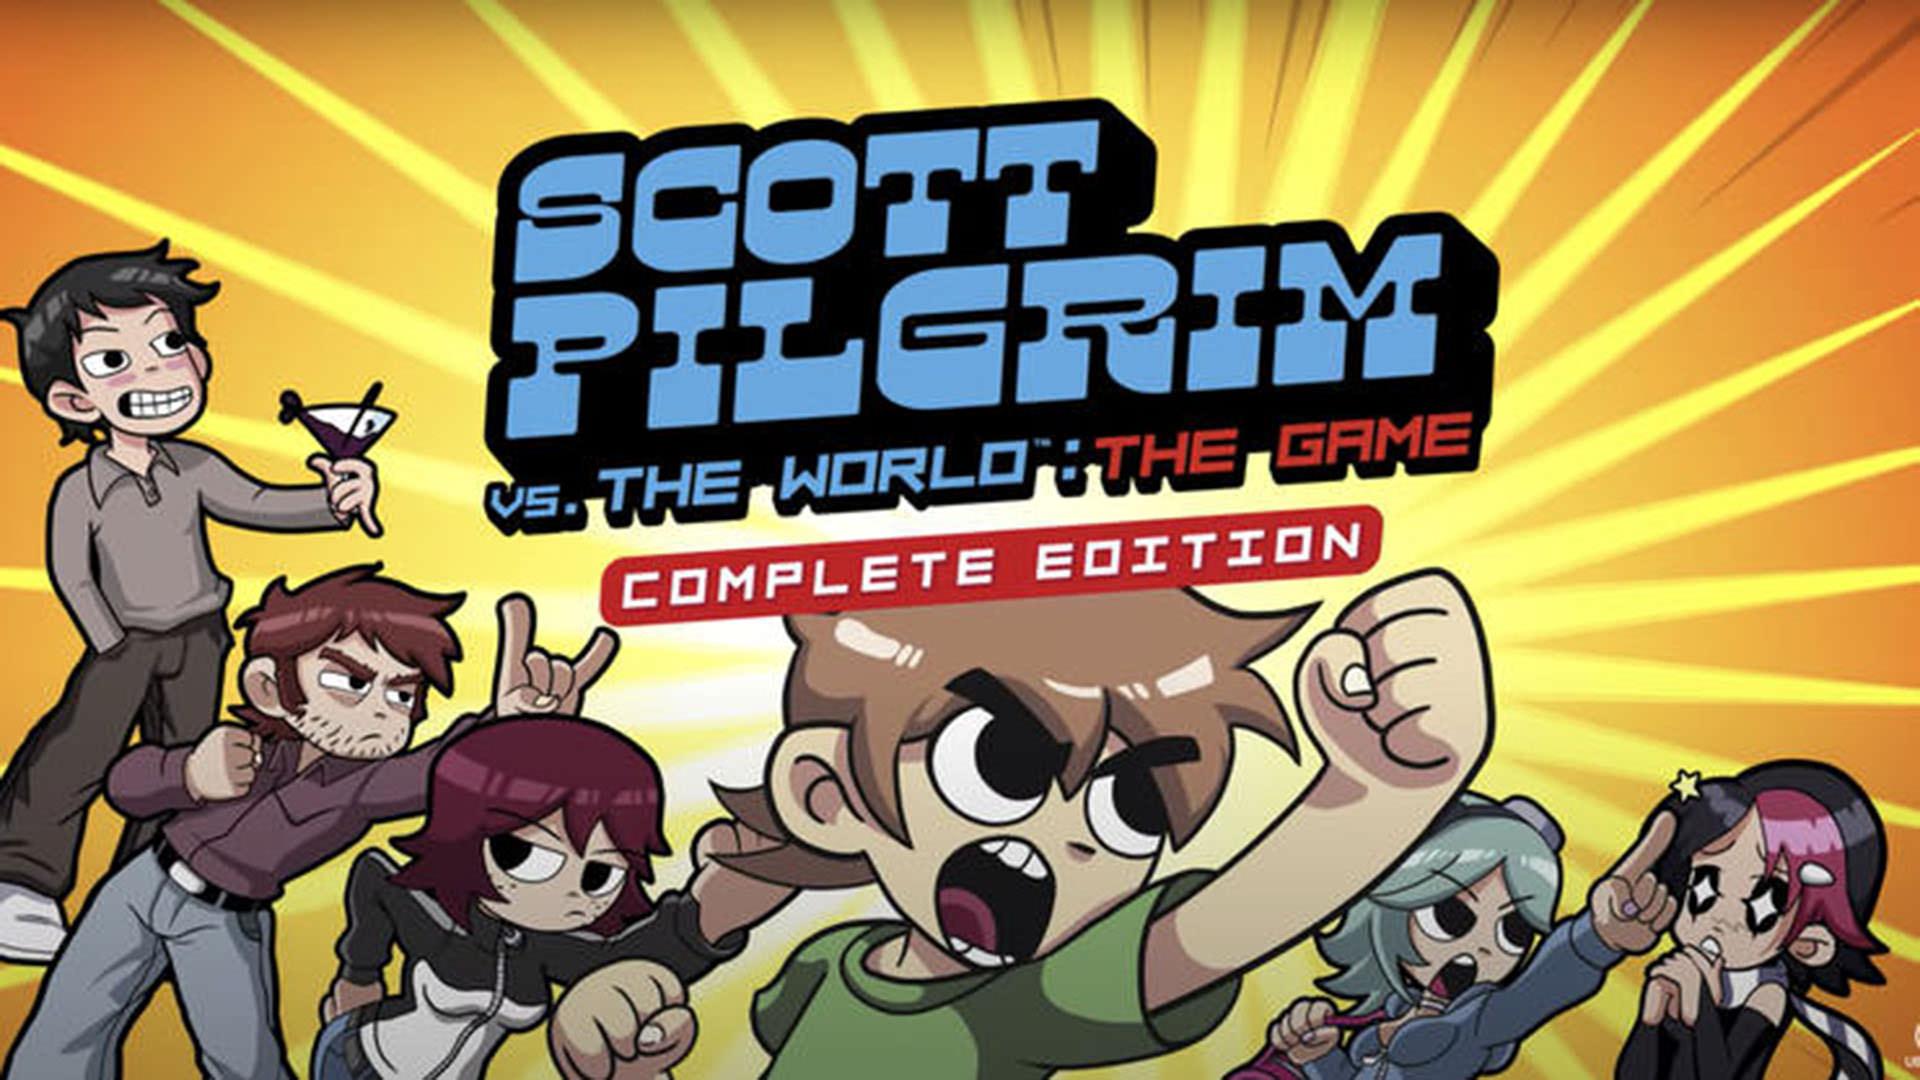 تاریخ انتشار Scott Pilgrim Vs. The World: The Game Complete Edition مشخص شد